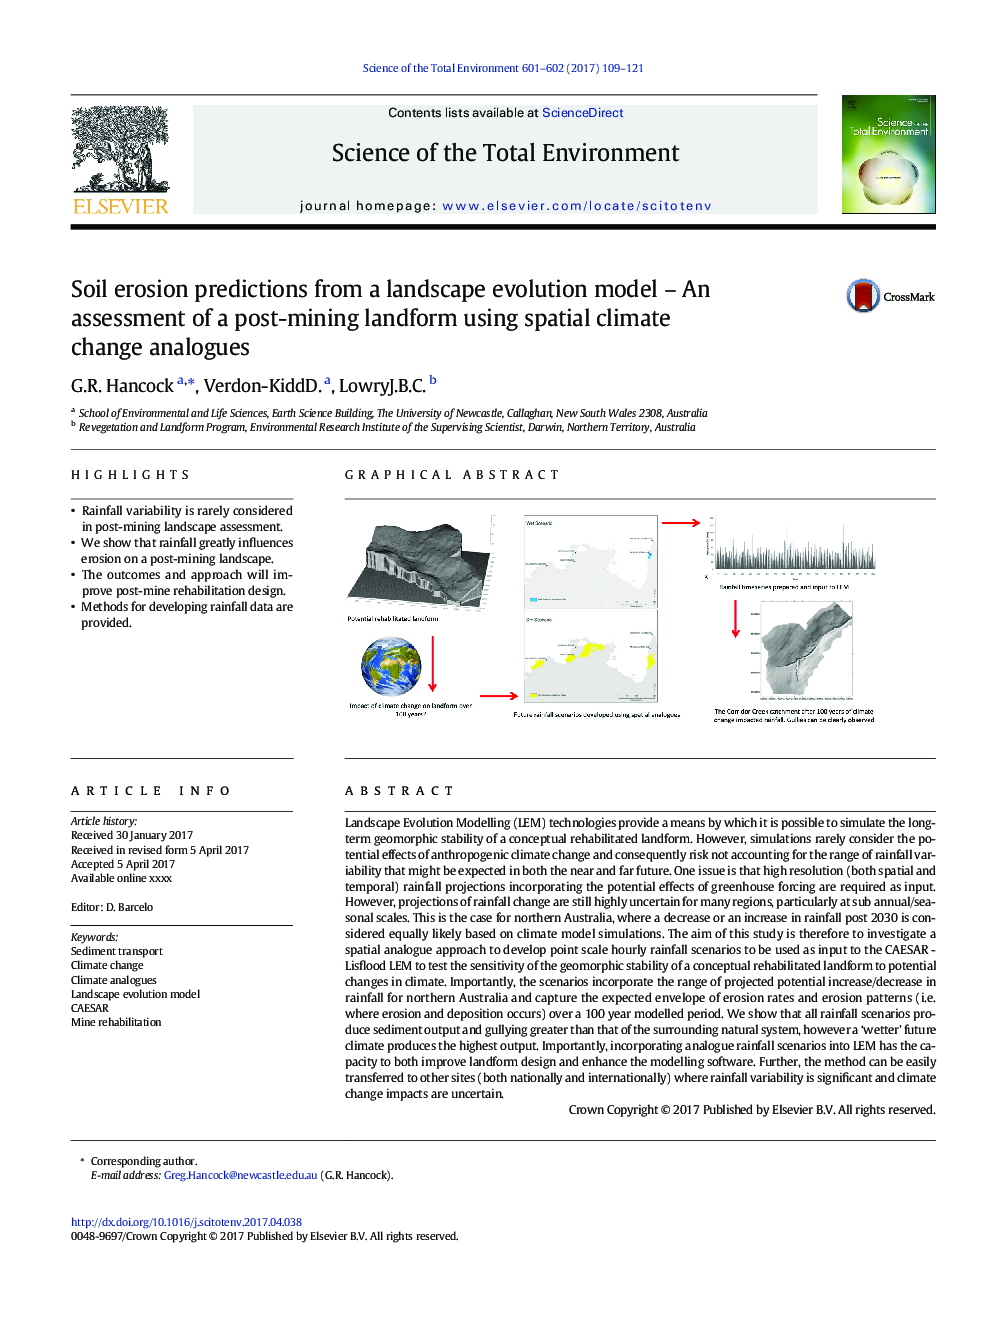 پیش بینی فرسایش خاک از یک مدل تکامل چشم انداز - ارزیابی یک شکل زمین بعد از معدن با استفاده از آنالوگهای تغییرات آب و هوایی فضایی 